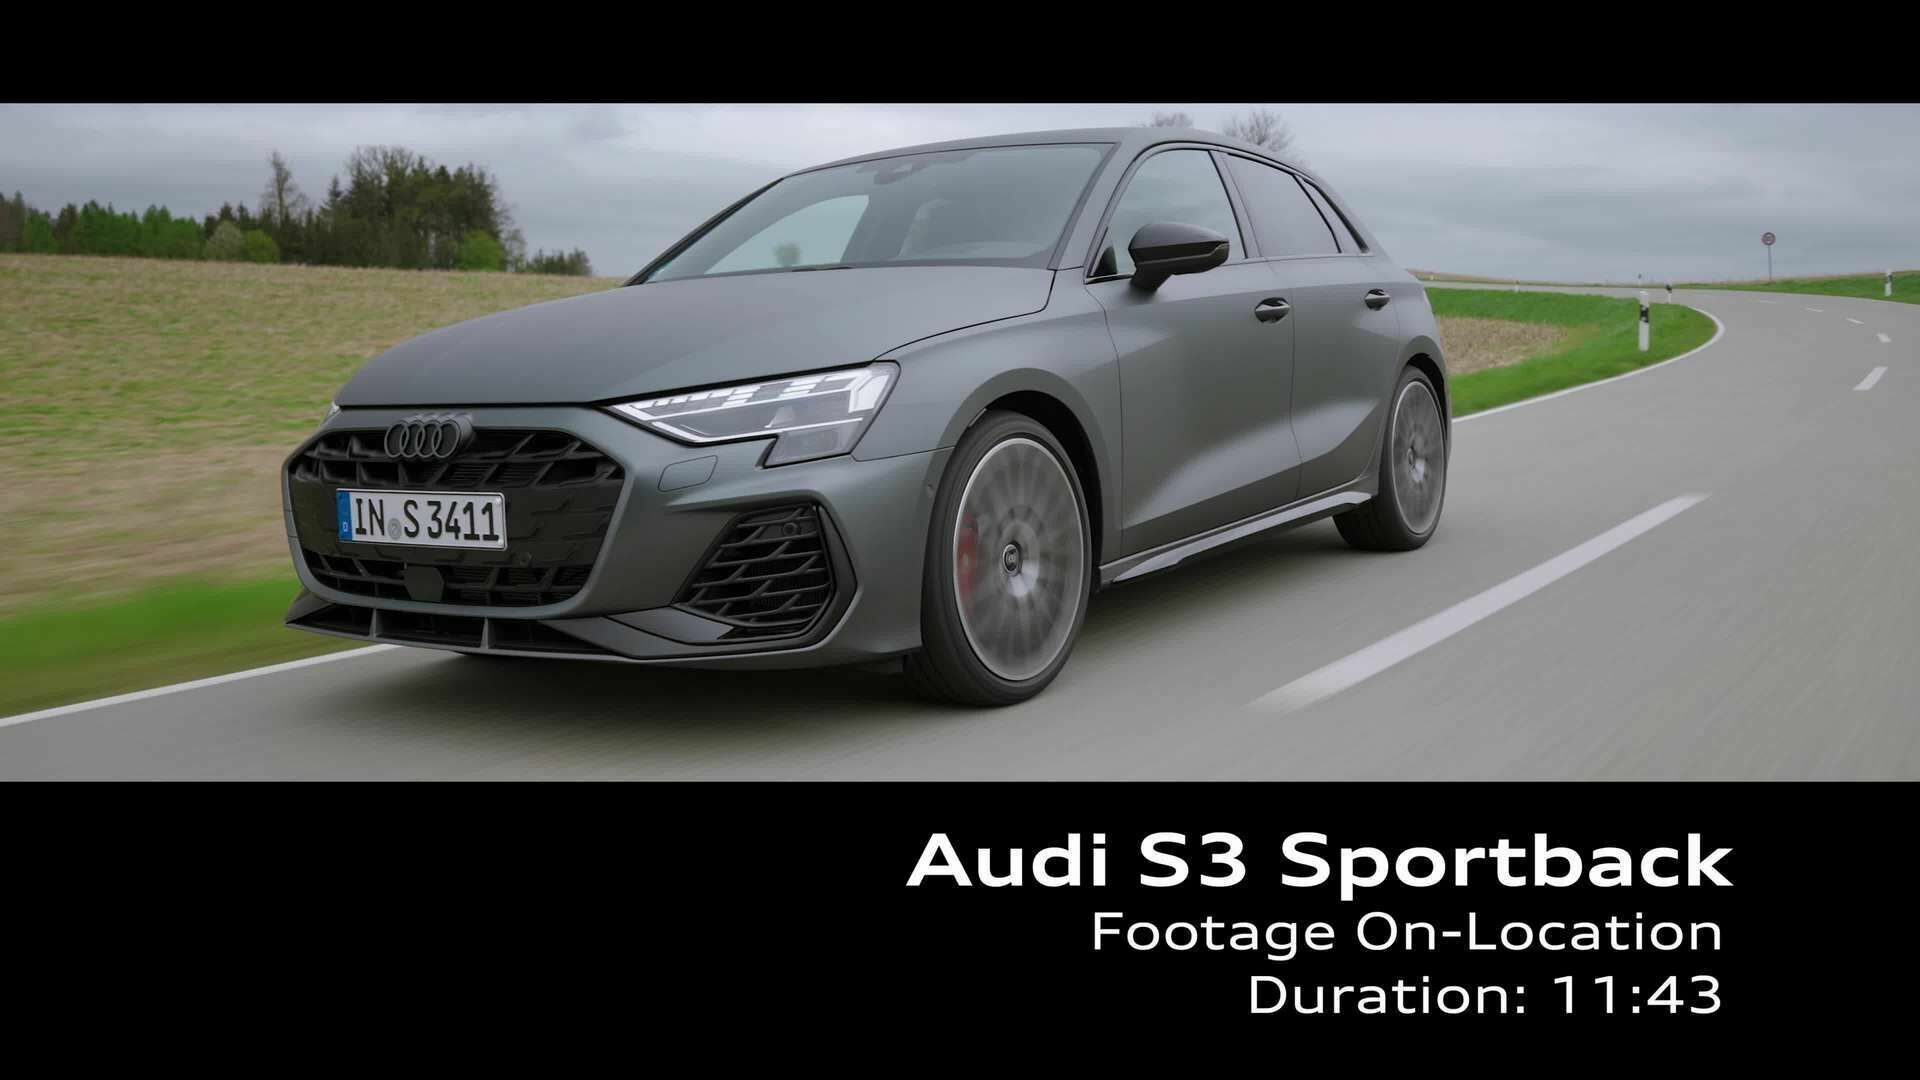 Audi S3 Sportback – Footage (On-Location)